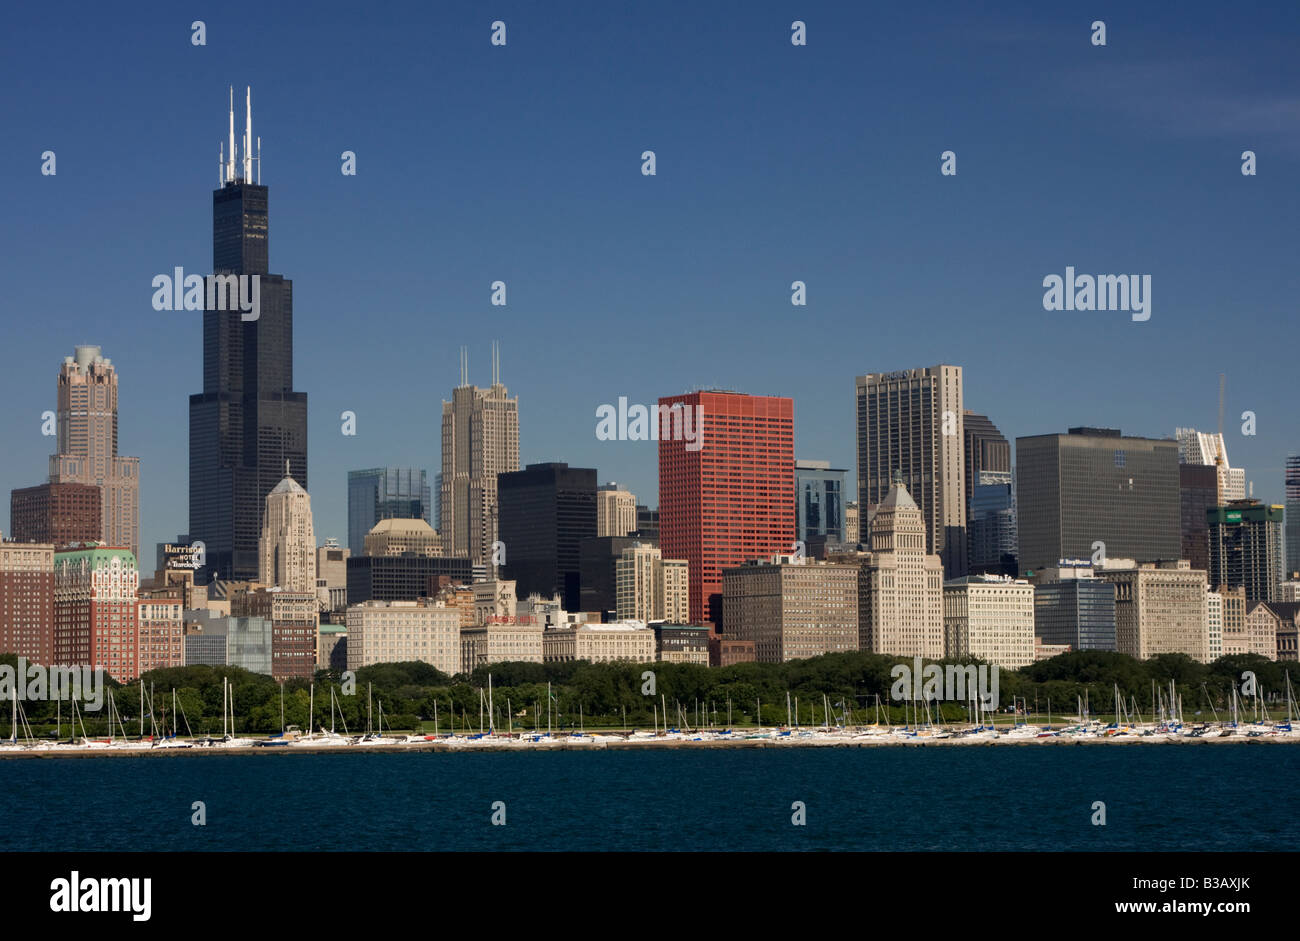 Skyline von Chicago, Illinois, am frühen Morgen.  Sears Tower (Willis Tower) links, Lake Michigan im Vordergrund. Stockfoto